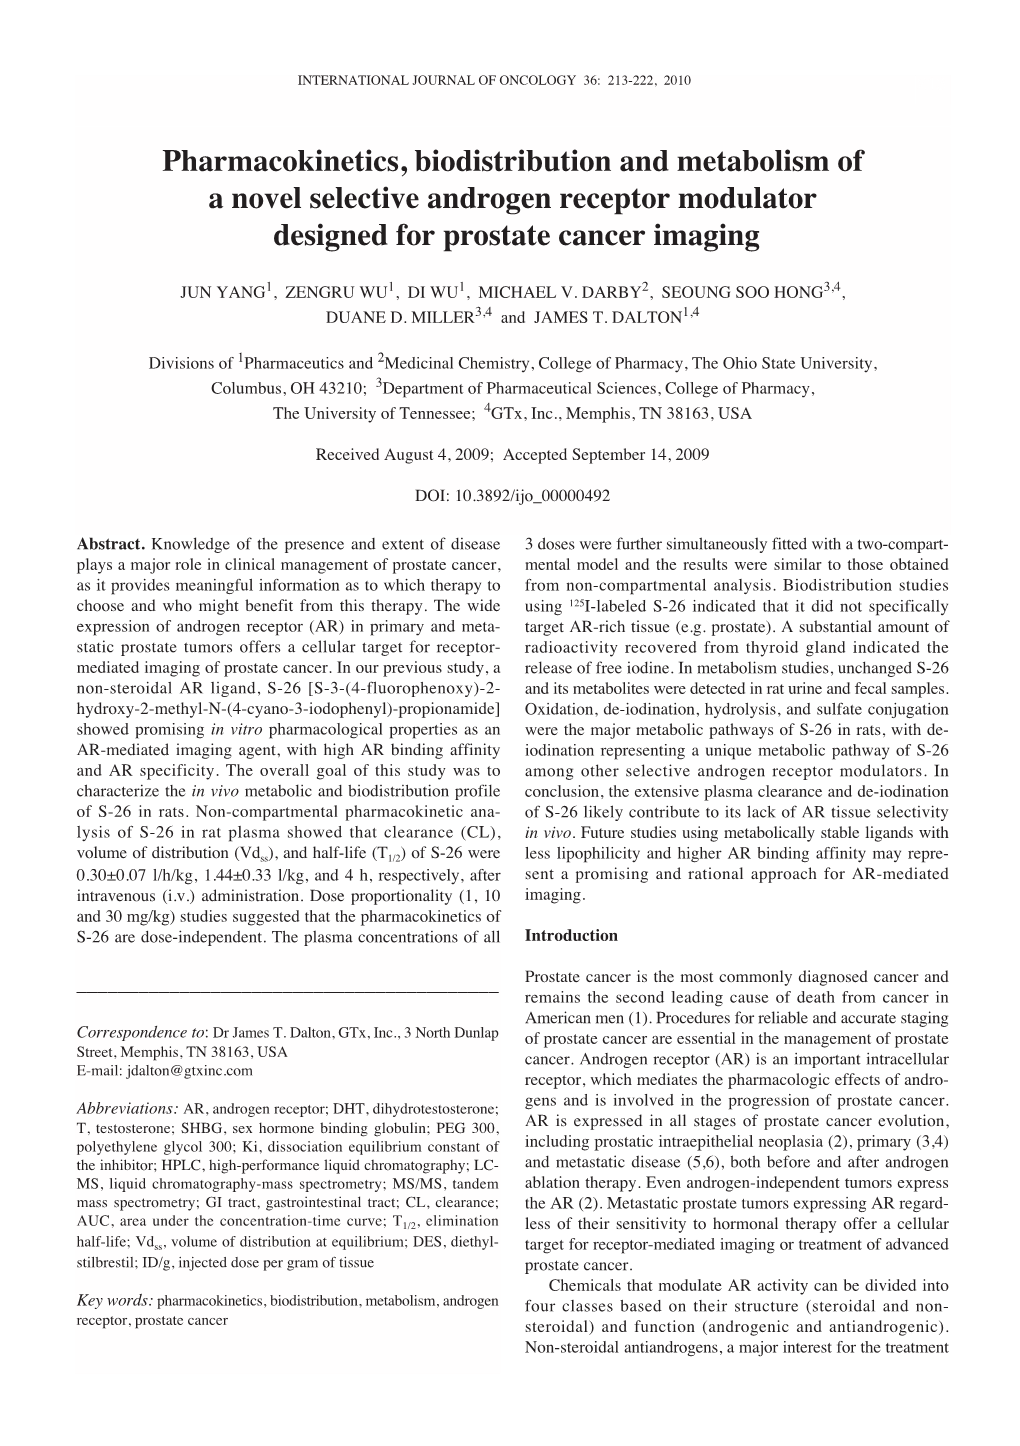 Pharmacokinetics, Biodistribution and Metabolism of a Novel Selective Androgen Receptor Modulator Designed for Prostate Cancer Imaging